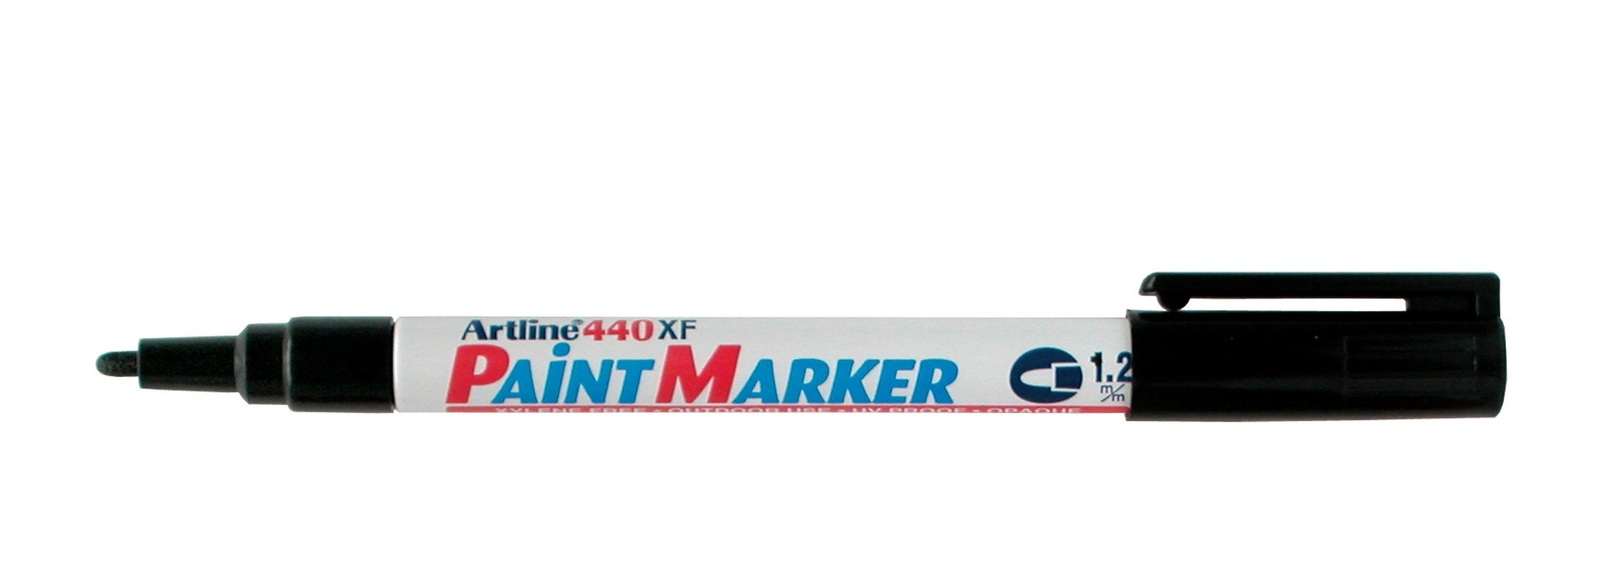 ARTLINE Marqueur Paint 440 XF permanent indélébile pointe